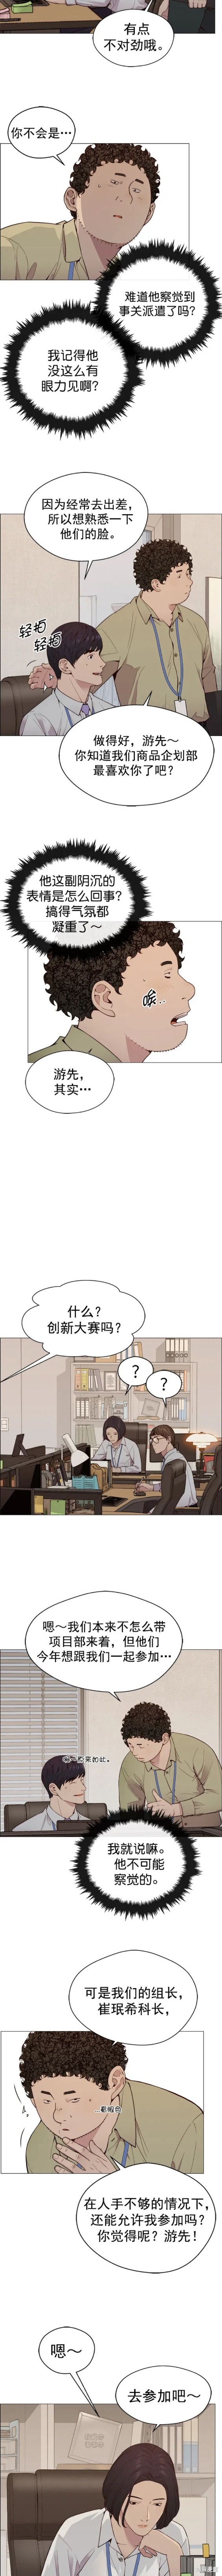 男子汉漫画,第145话10图